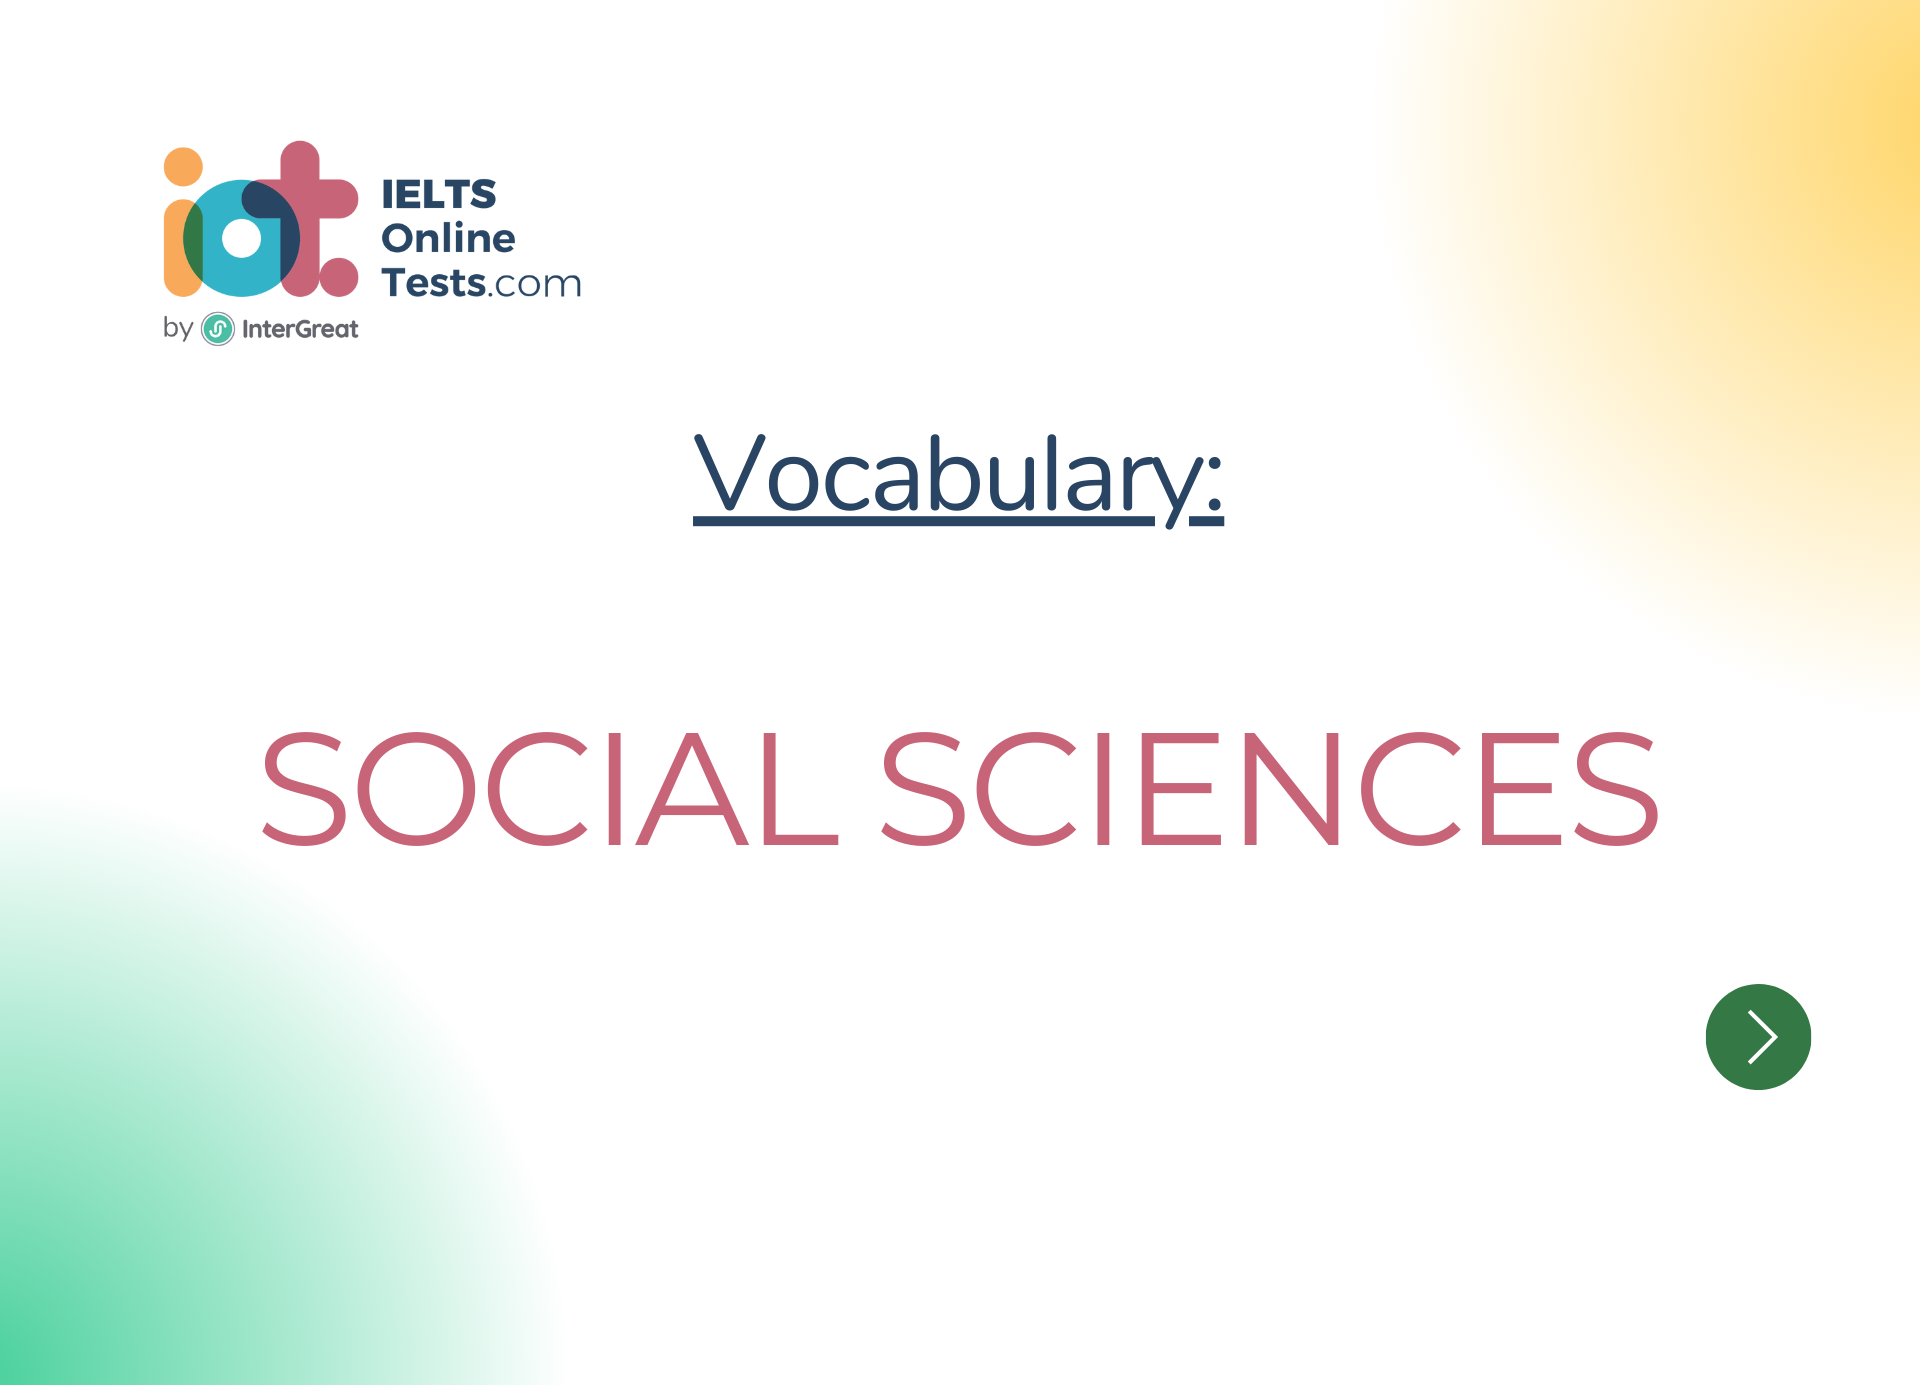 Social sciences